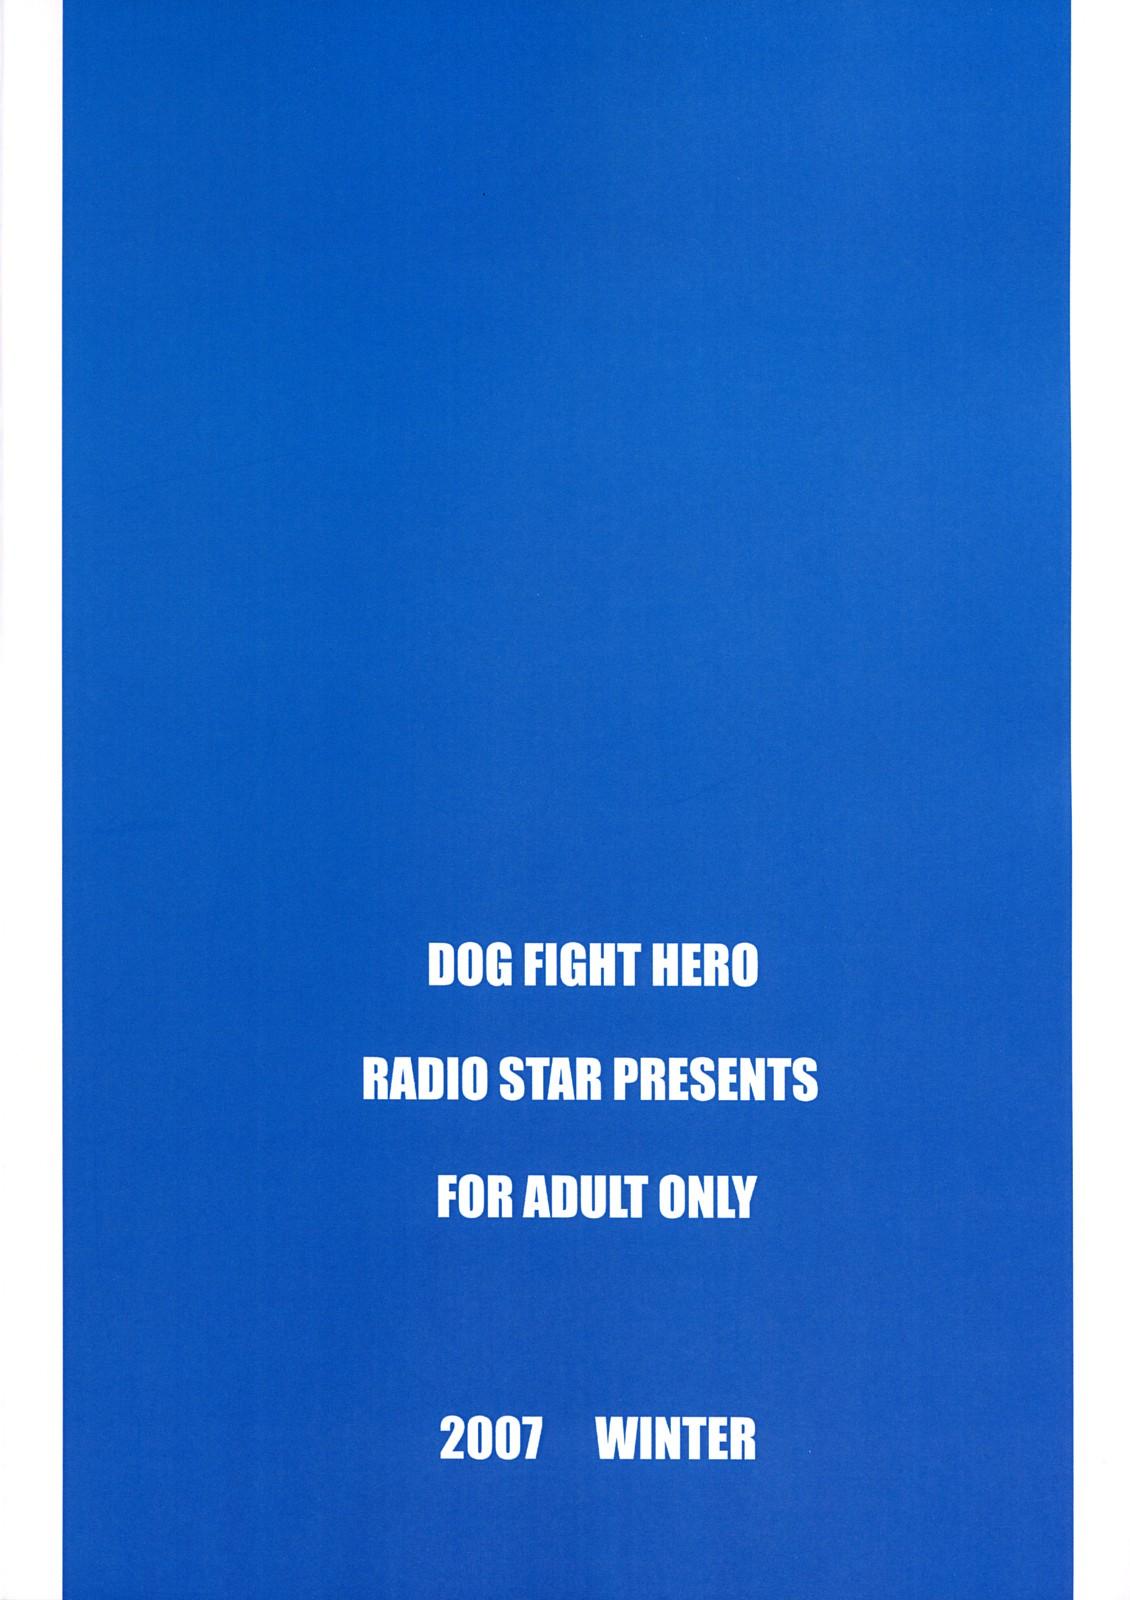 DOG FIGHT HERO 17